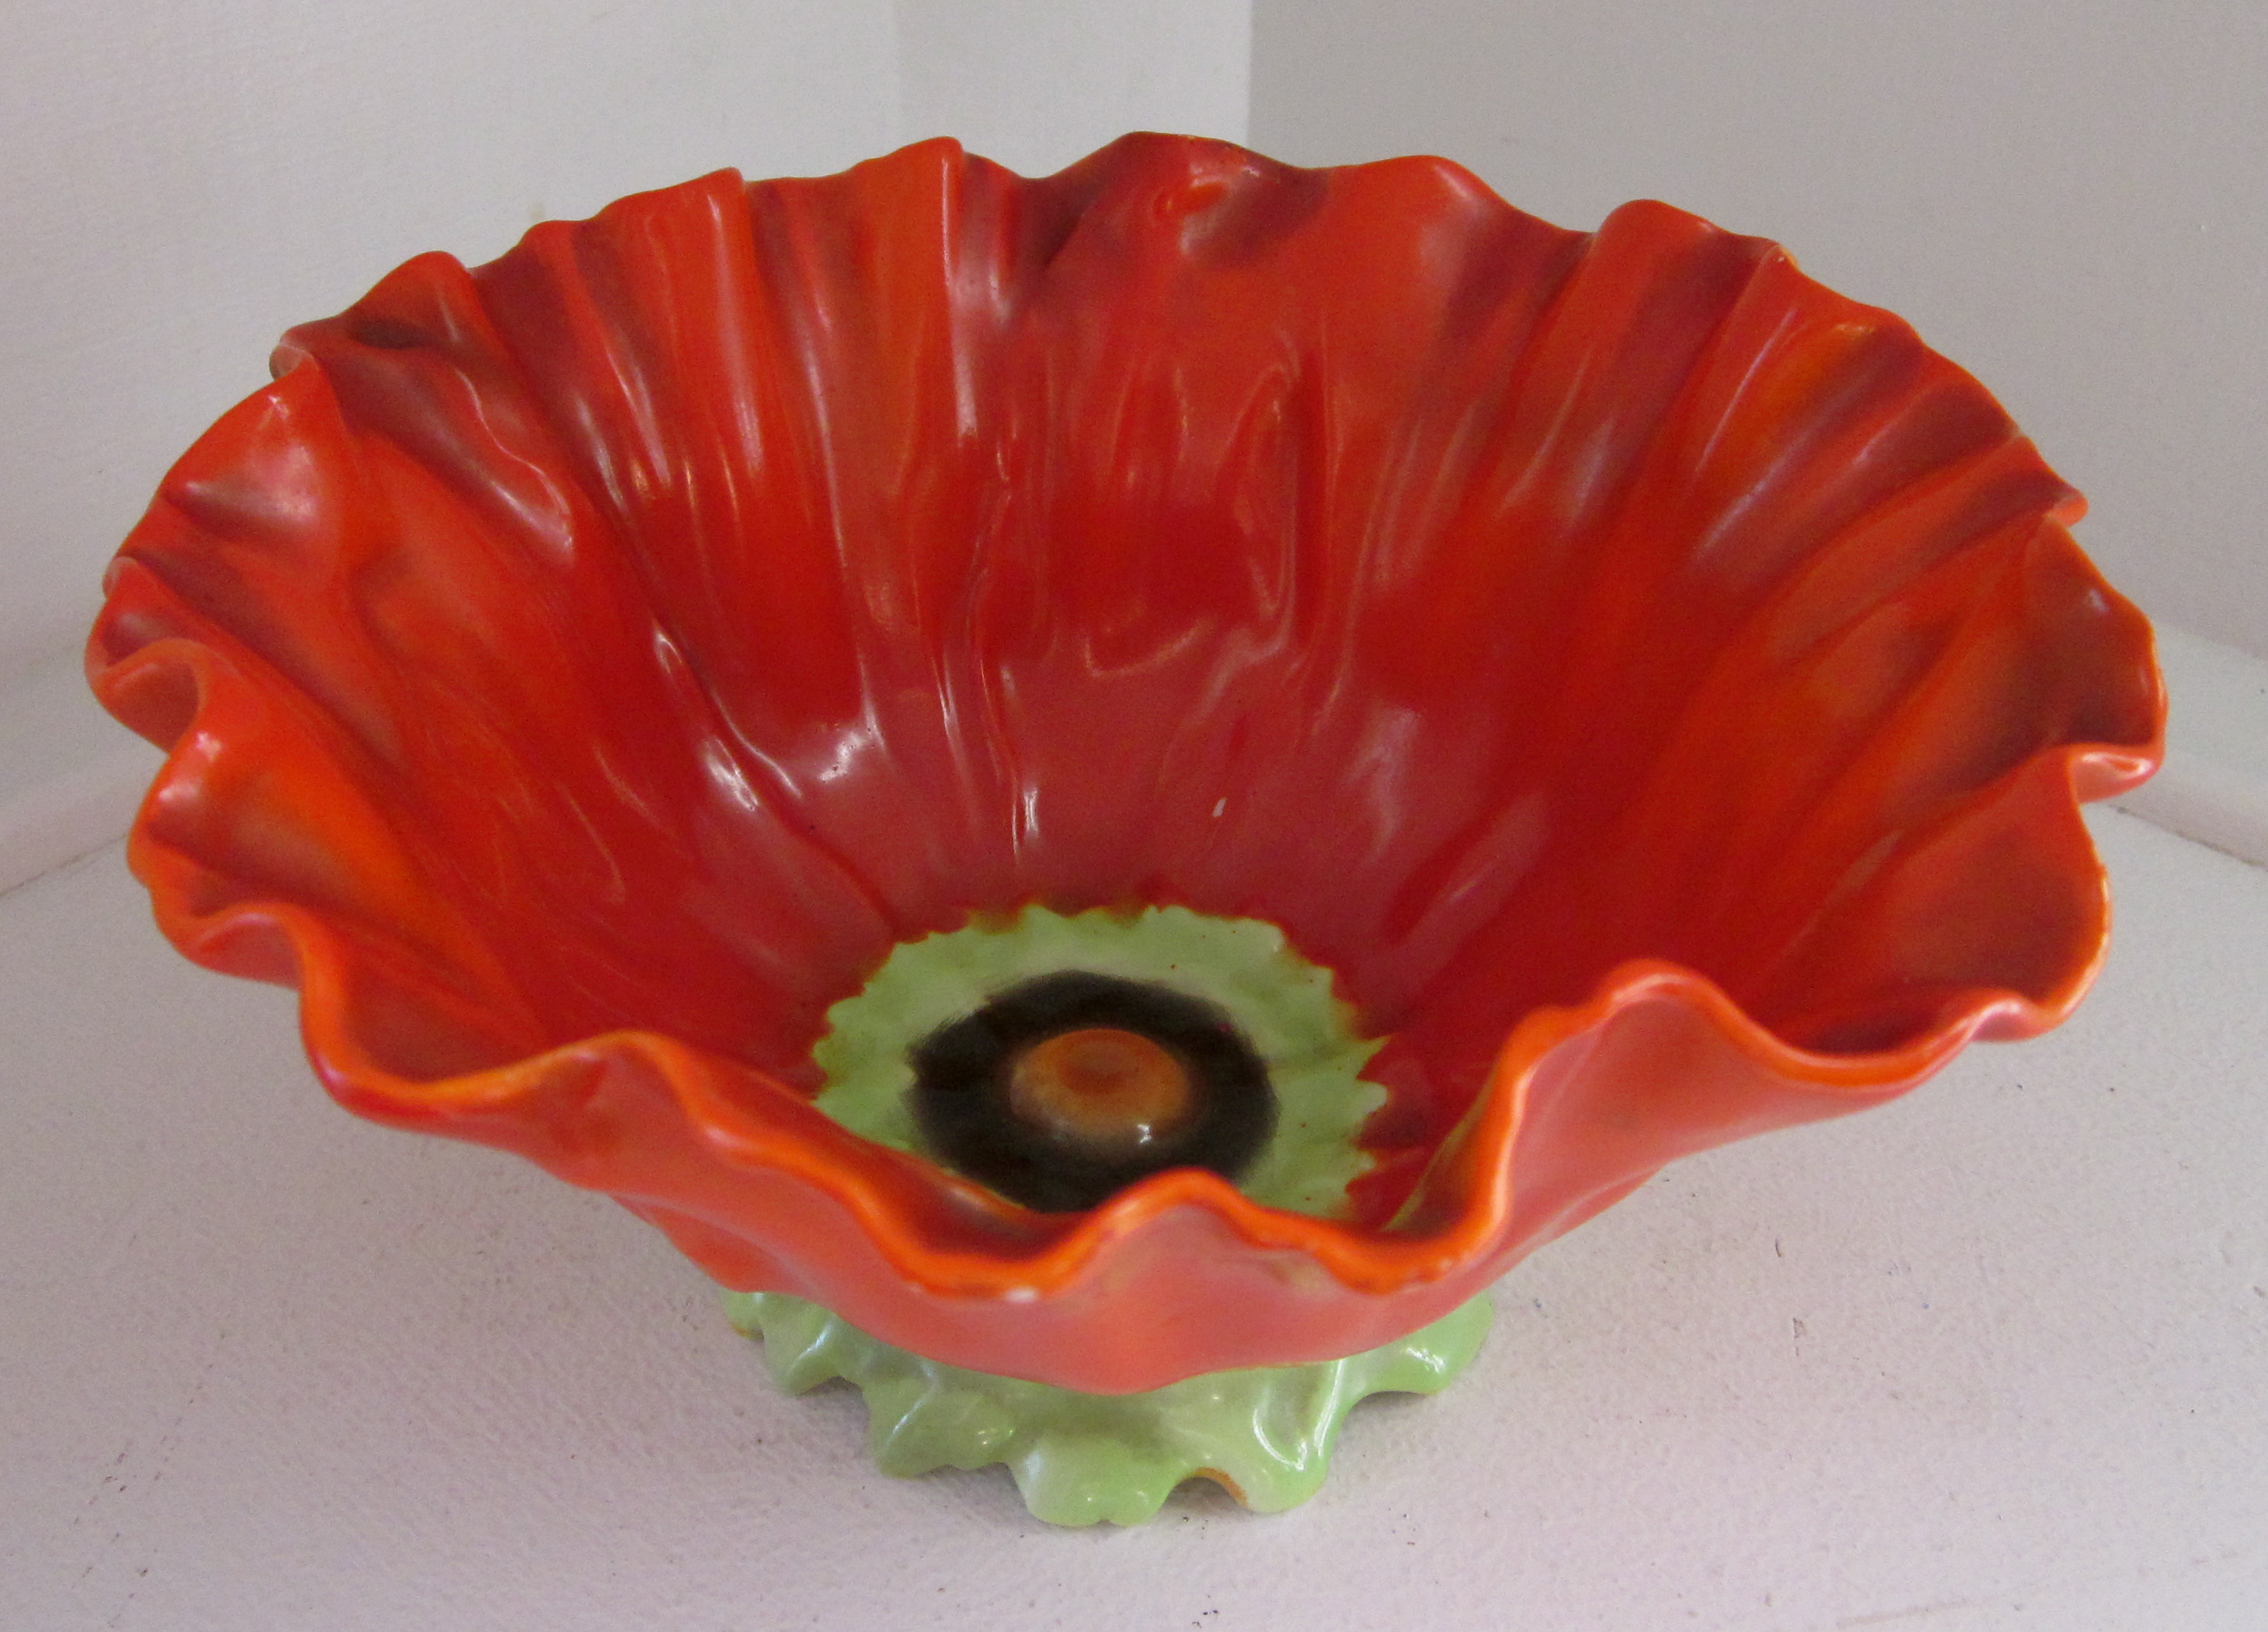 Royal Bayreuth Poppy Bowl C1902 Tettau Porcelain Bavaria For Sale Antiques Com Classifieds